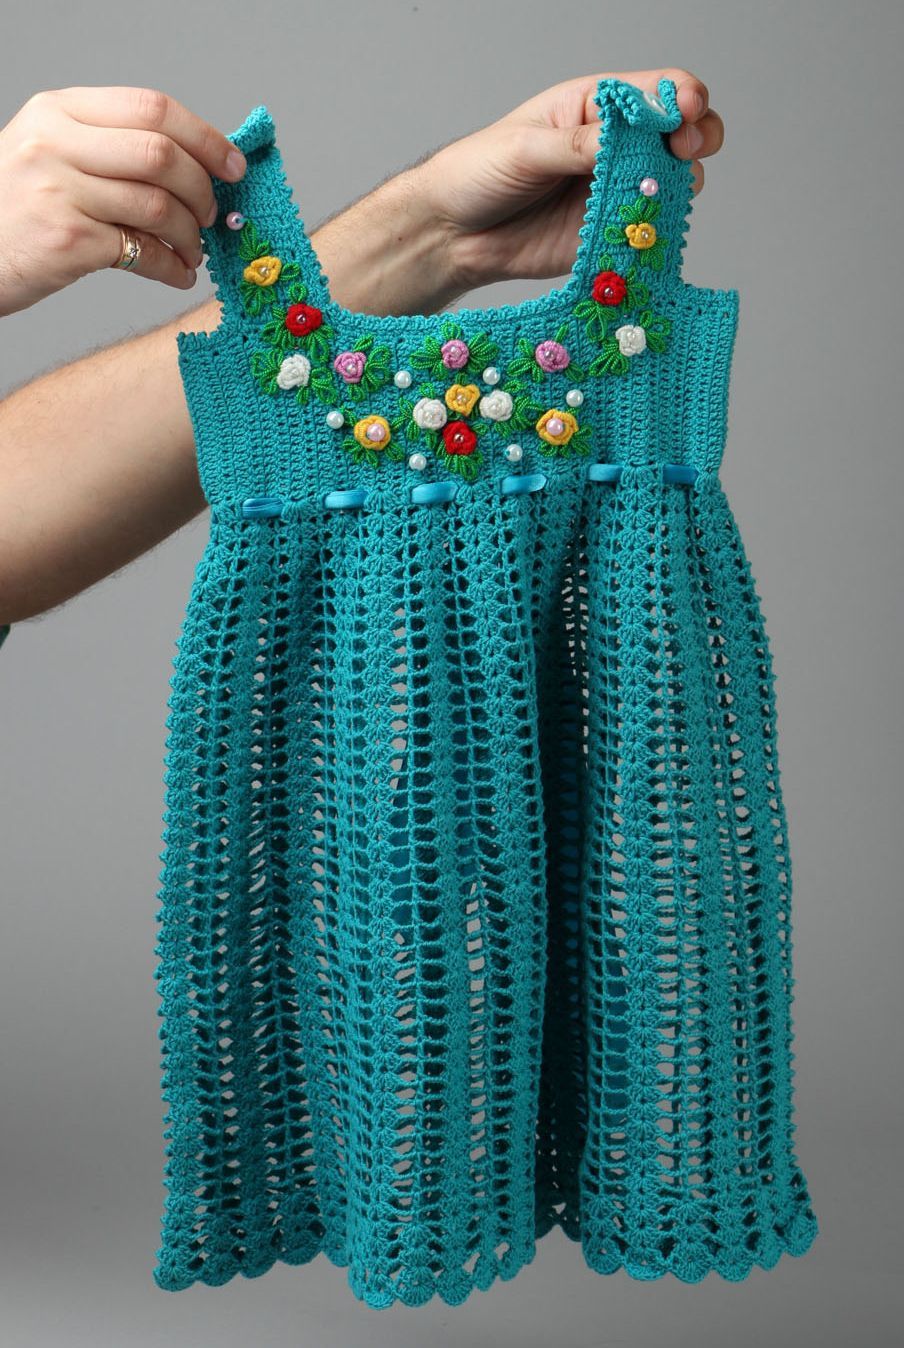 Crochet cotton dress for girl photo 4